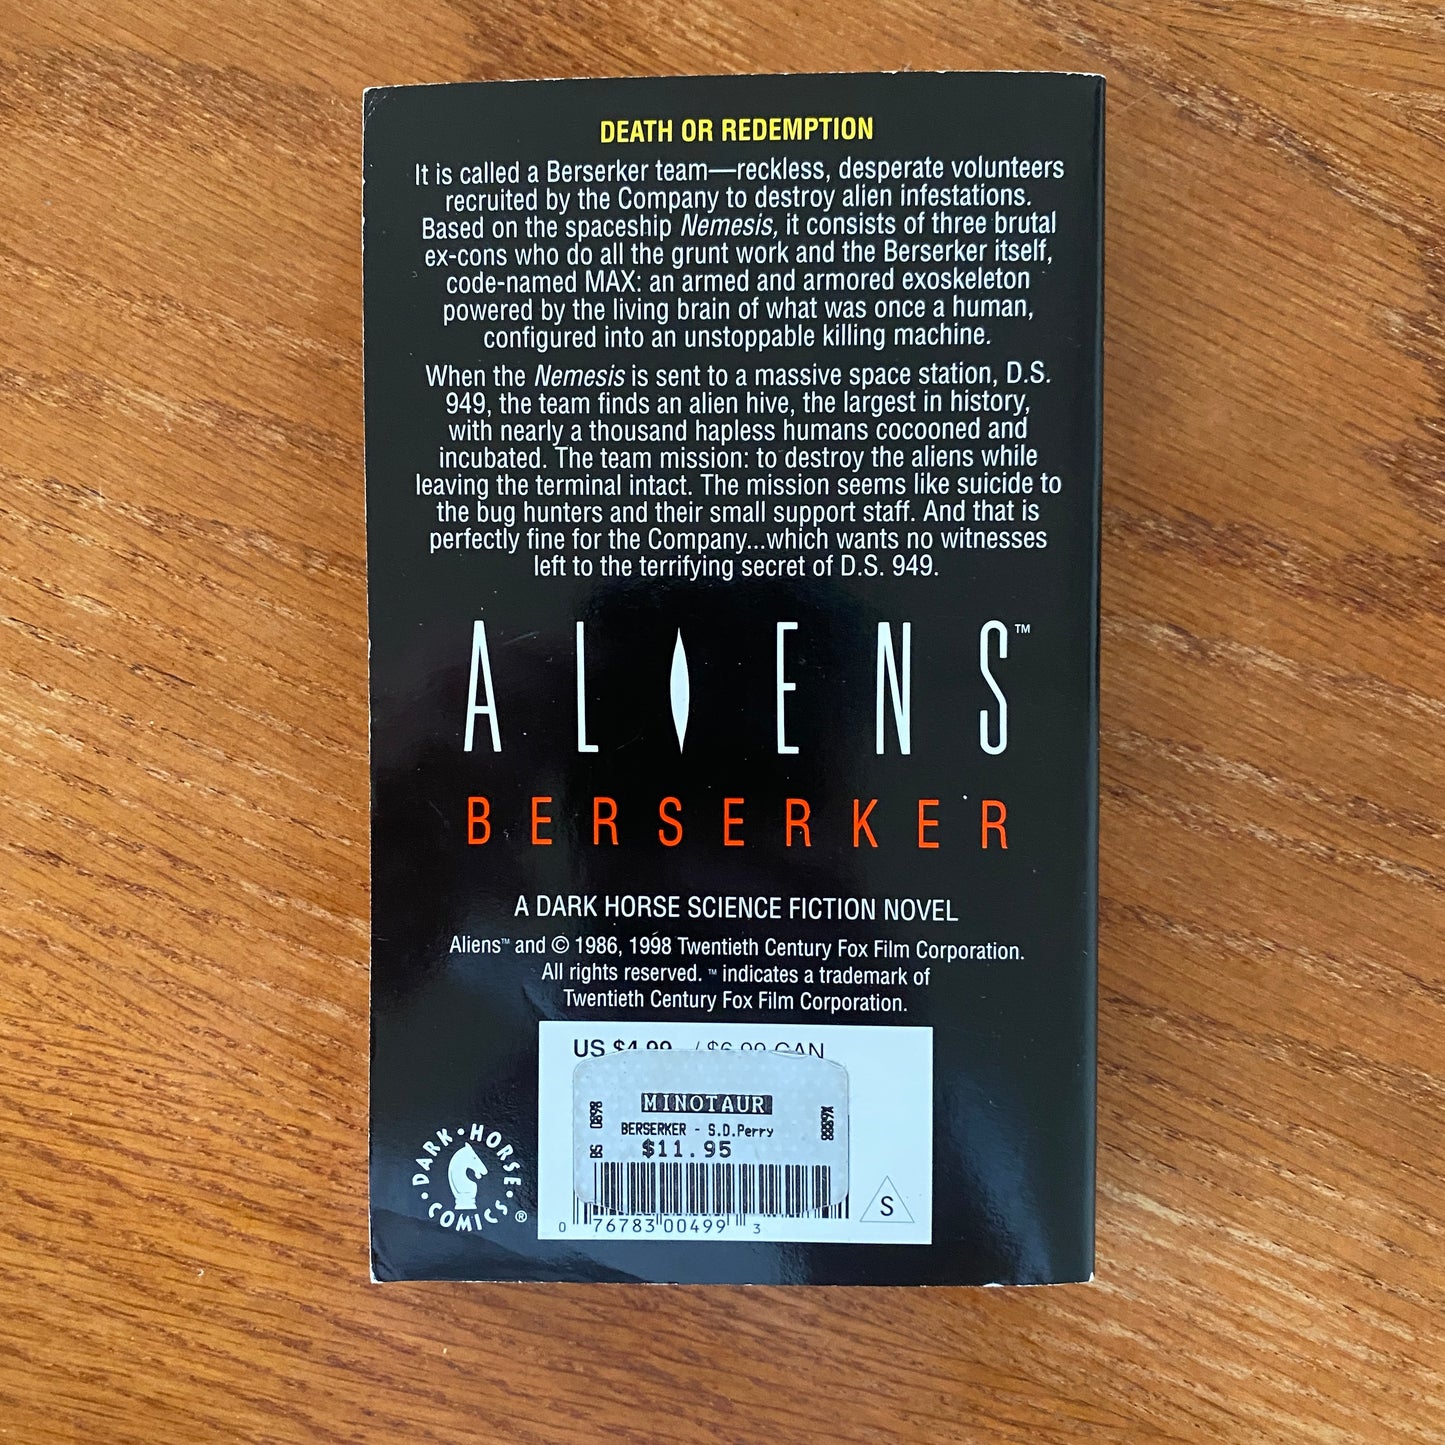 Aliens: Berserker - S.D Perry